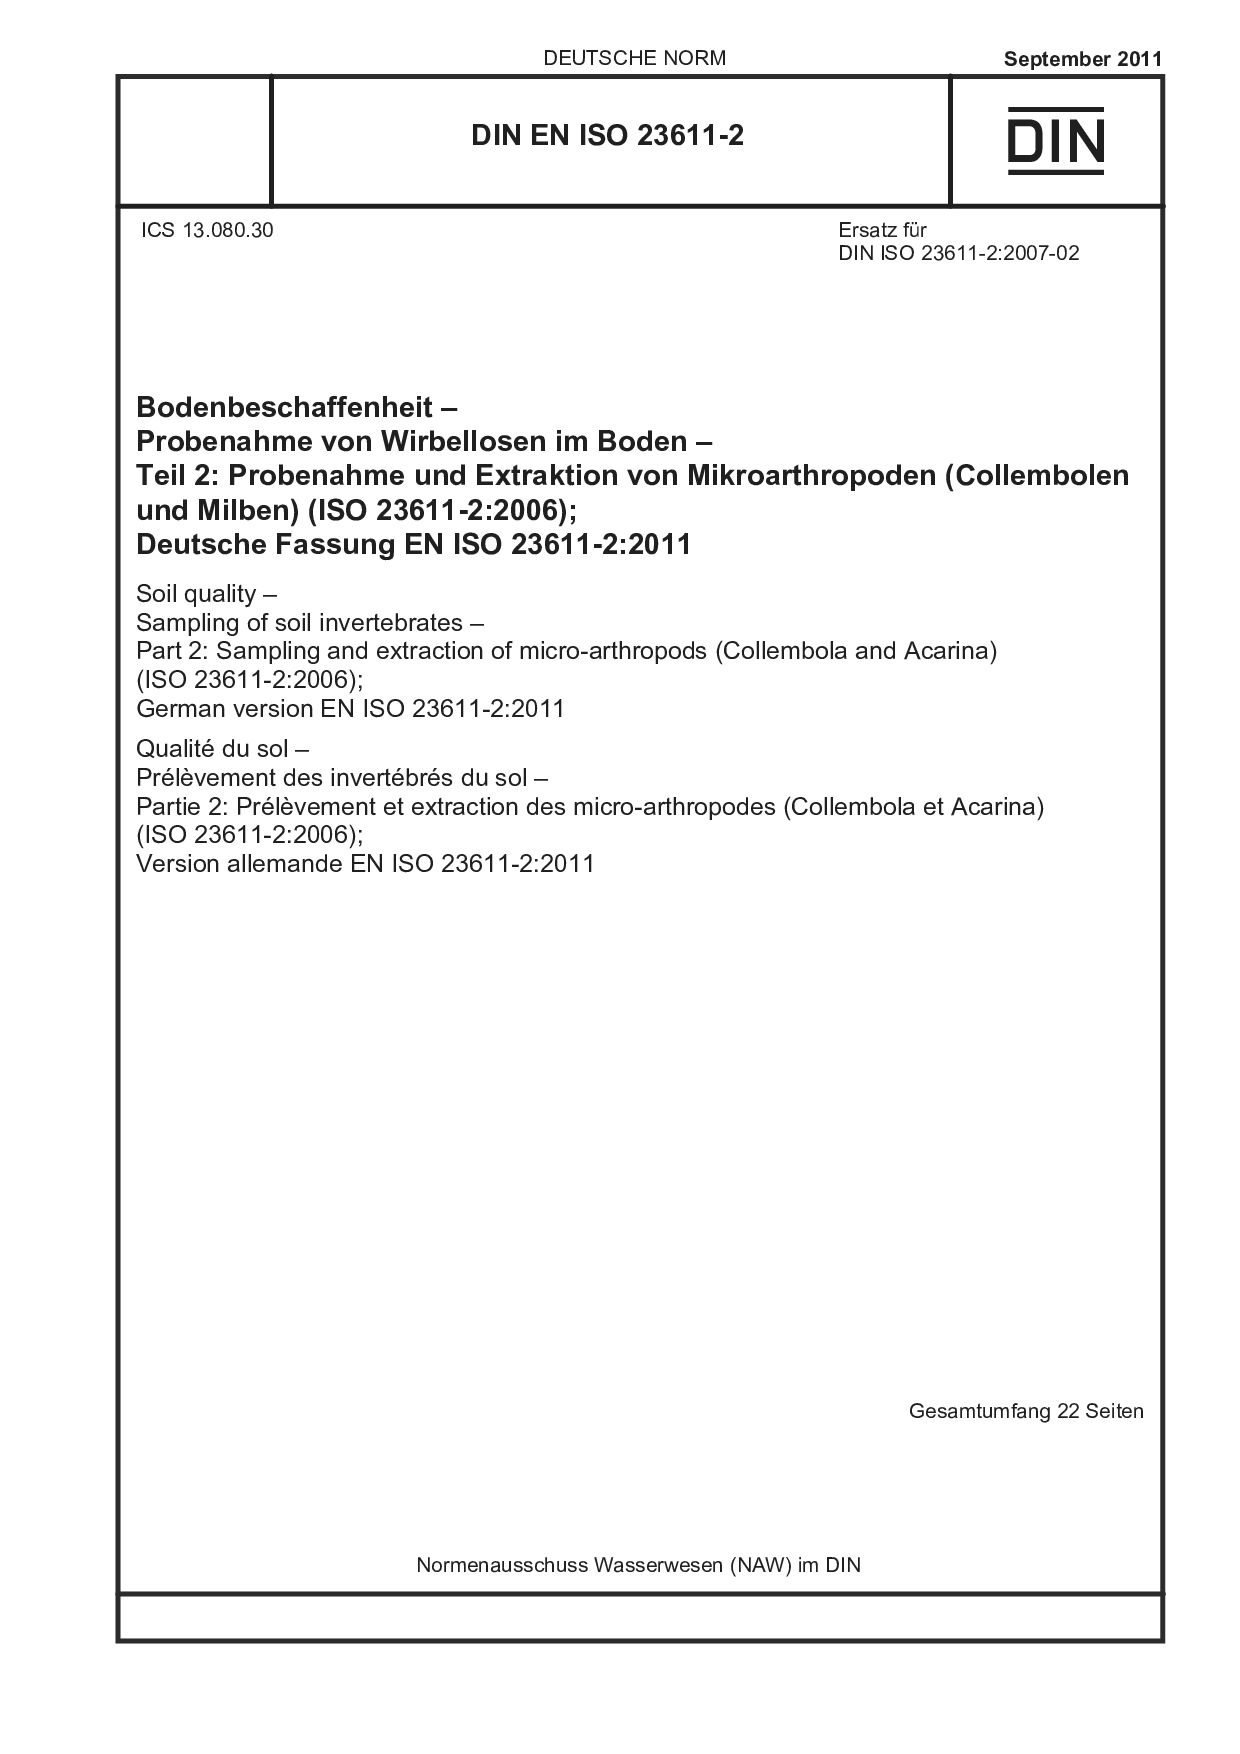 DIN EN ISO 23611-2:2011封面图